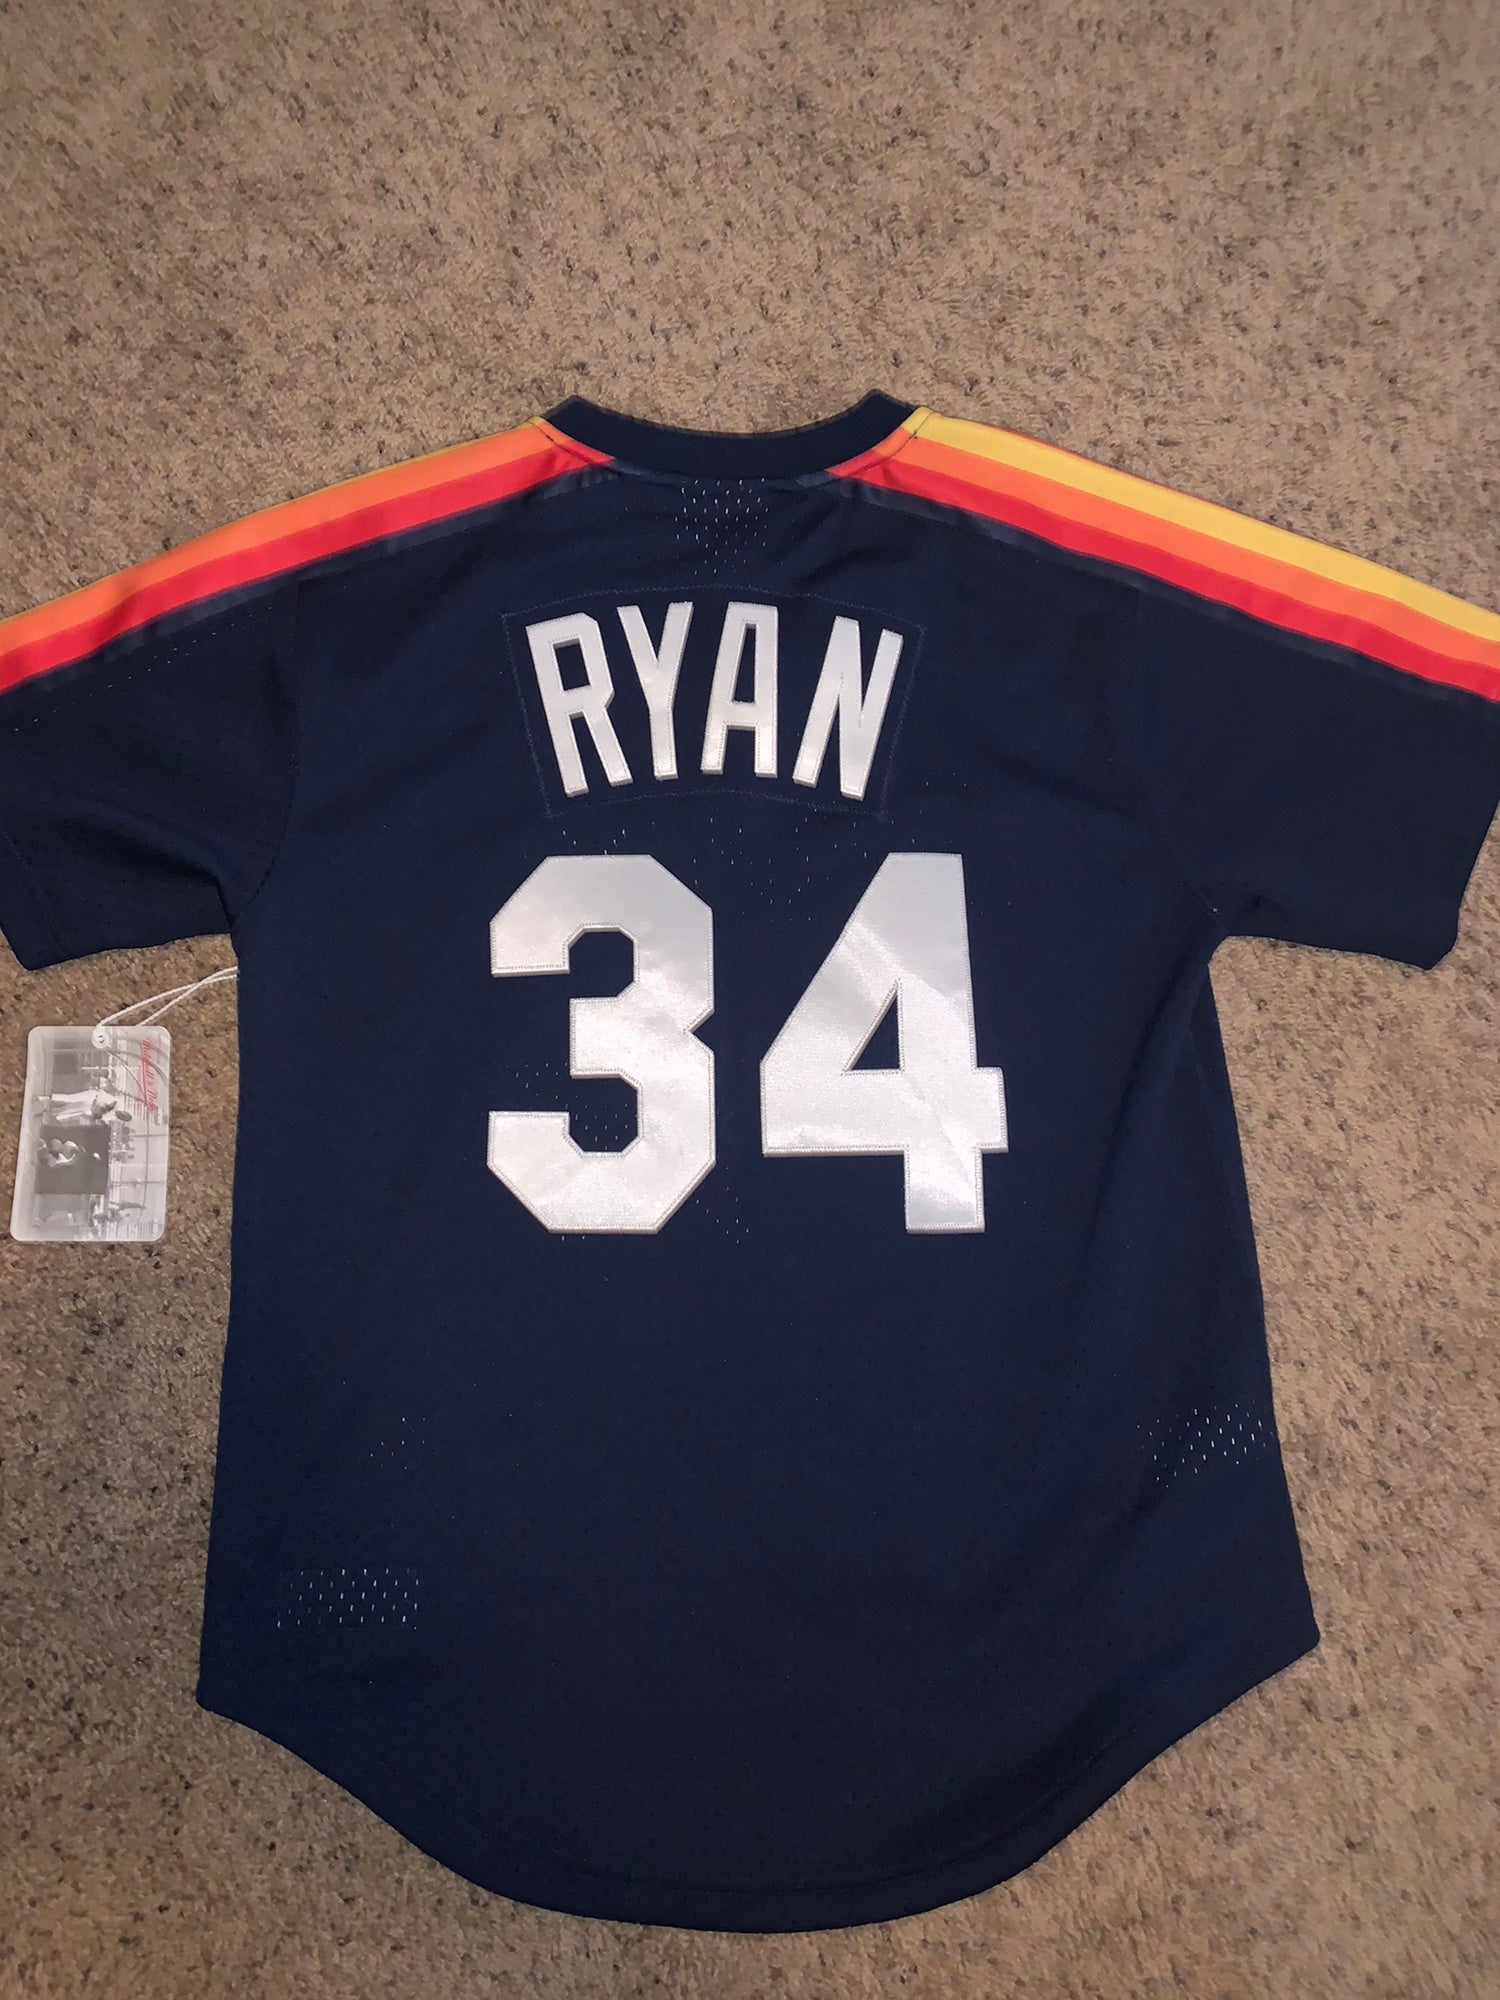 1983-85 Nolan Ryan Game Worn Houston Astros Jersey.  Baseball, Lot  #80583